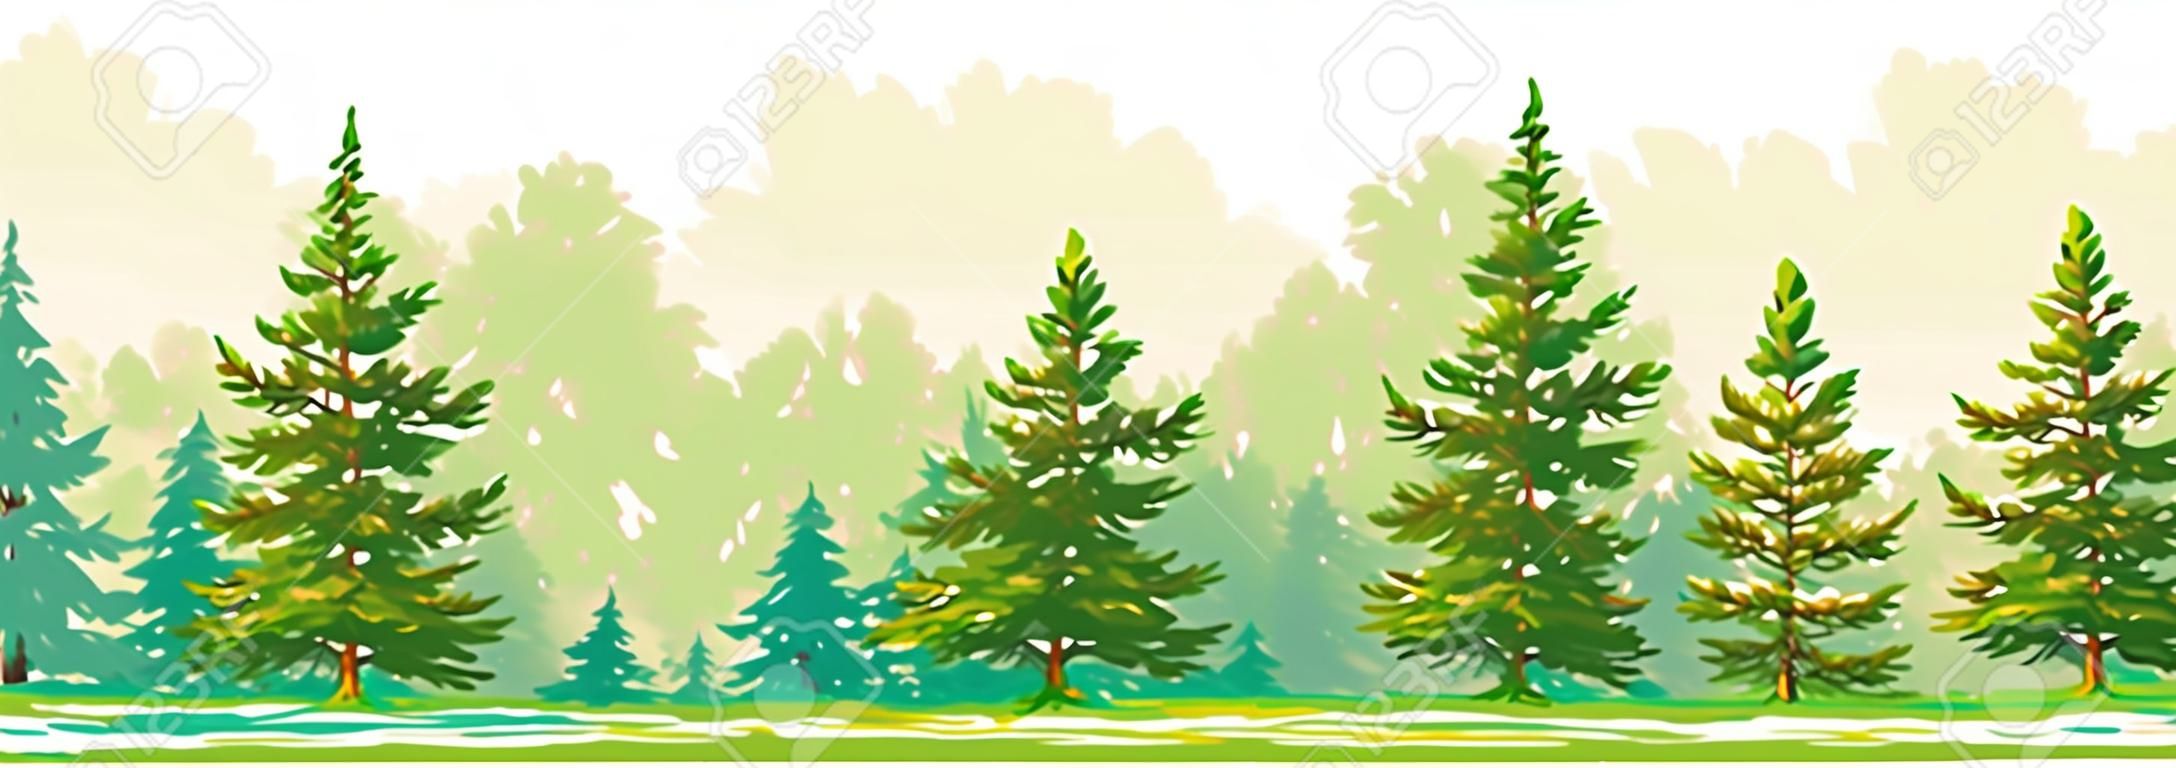 Borda de uma floresta com abeto jovem e pinheiros. Gráfico vetorial. EPS8